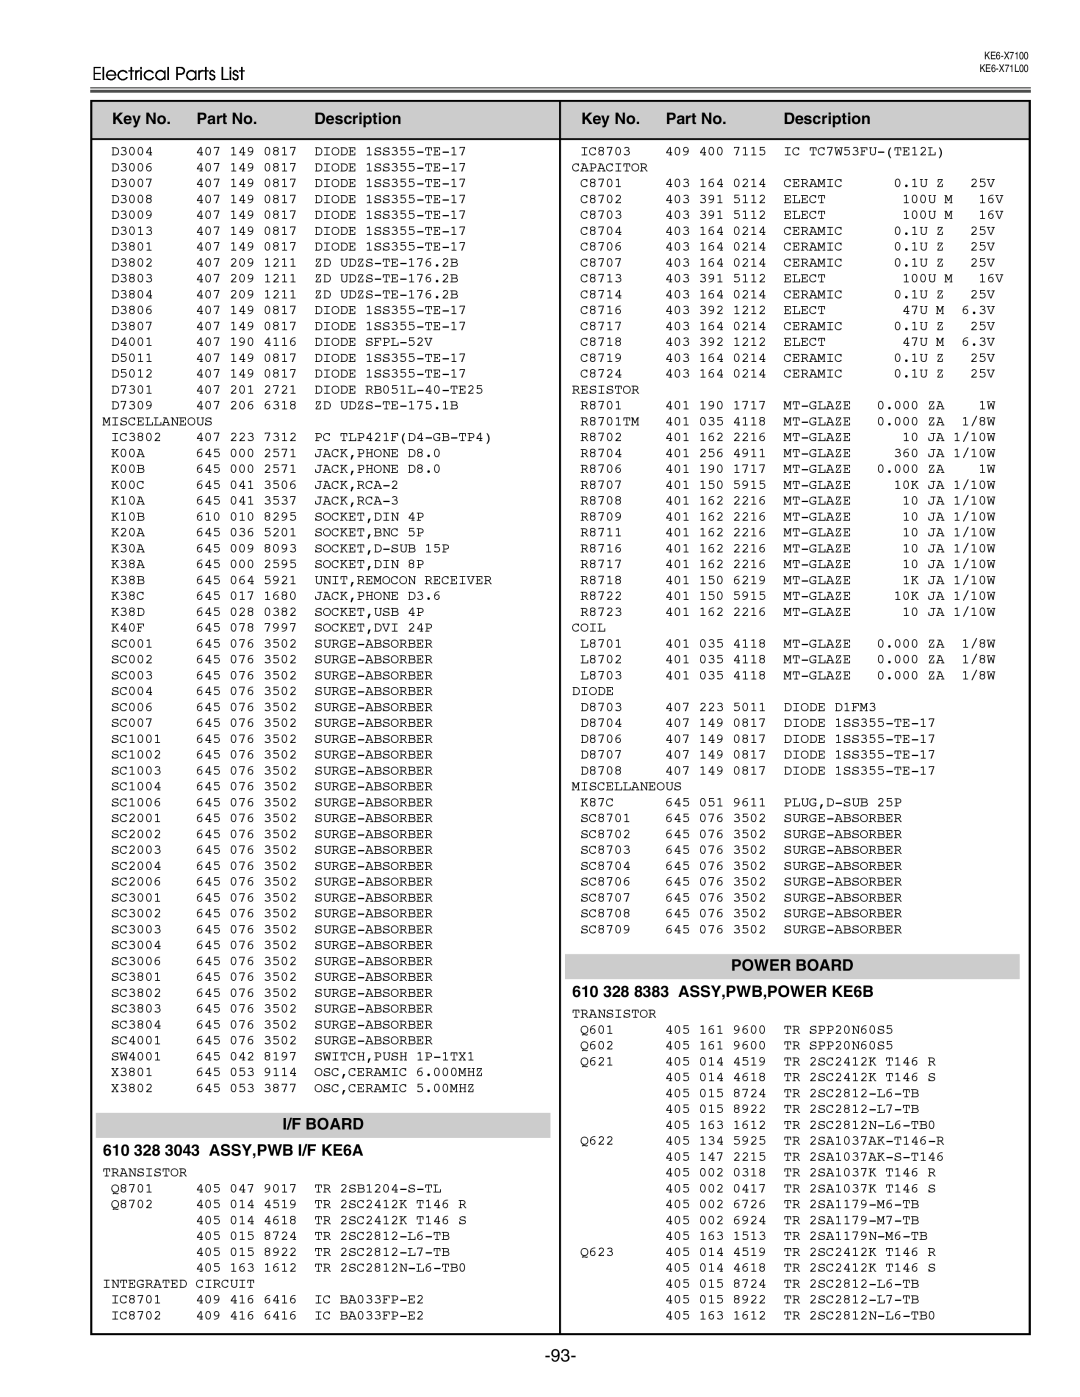 Eiki LC-X71 LC-X71L Electrical Parts List, Description, Power Board, 610 328 8383 ASSY,PWB,POWER KE6B, I/F Board 